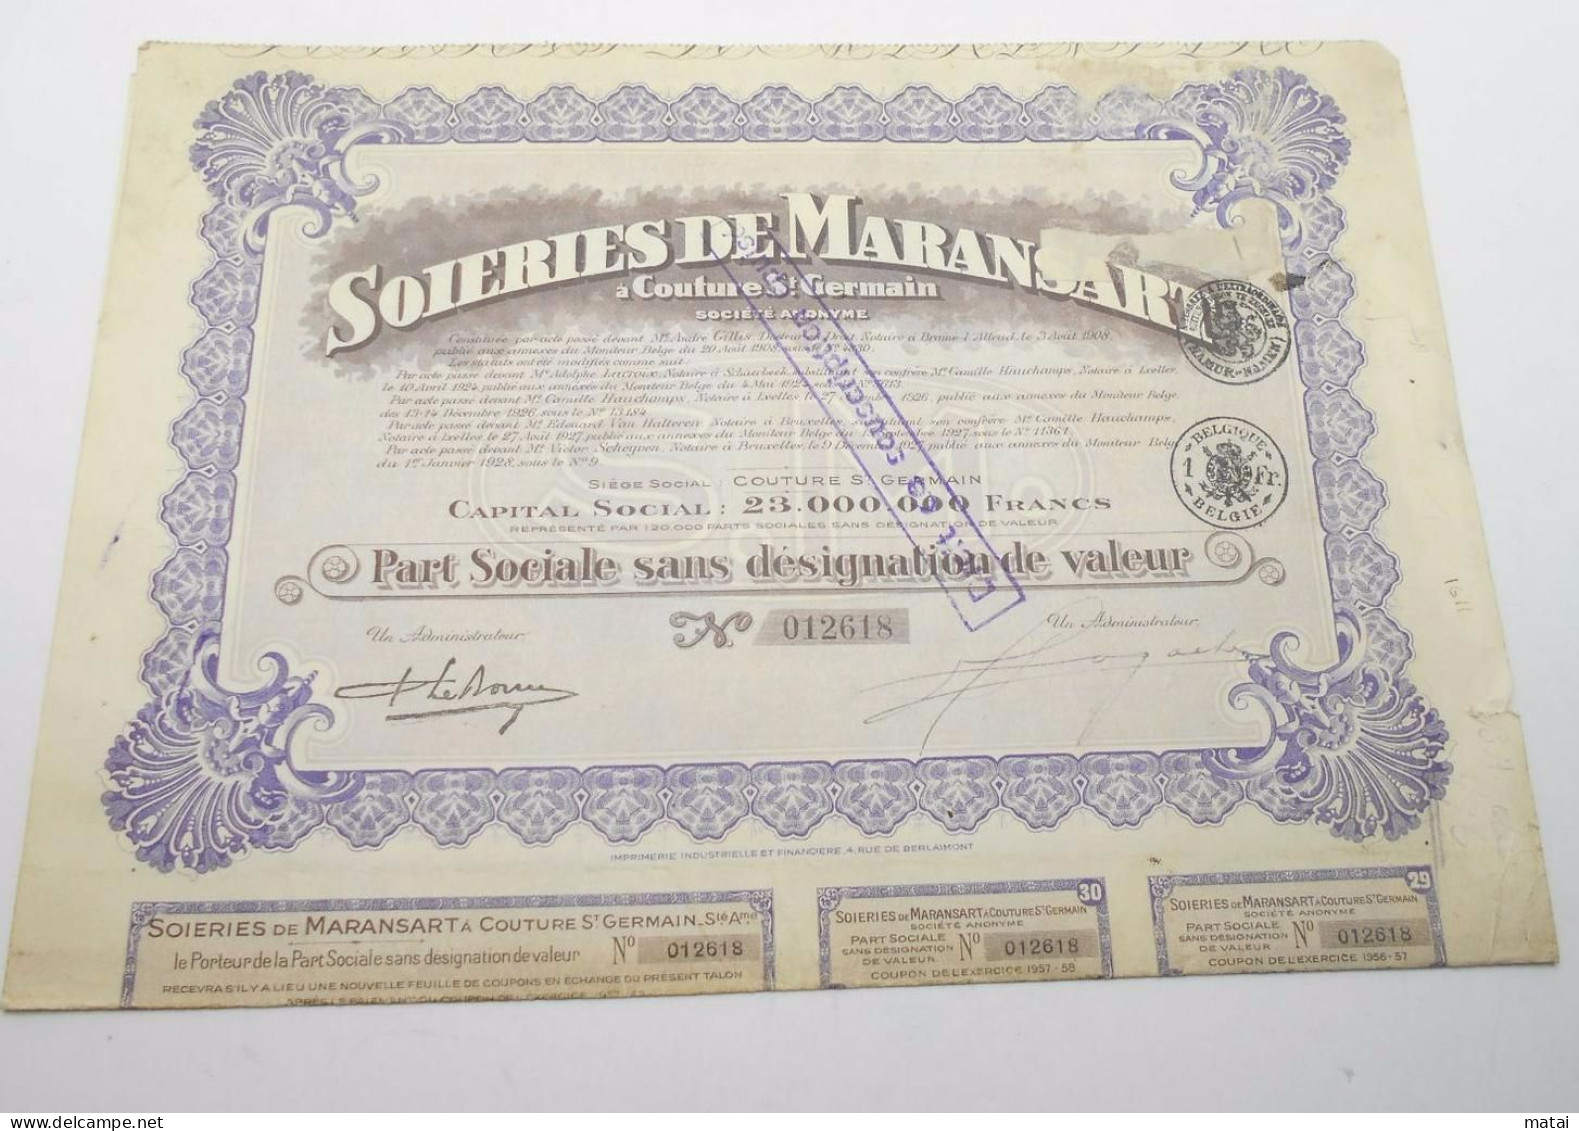 Part Sociale " Soieries De Maransart " Couture St Germain 1928 Soie Textile ,avec Tous Les Coupons N° 012618 - Tessili